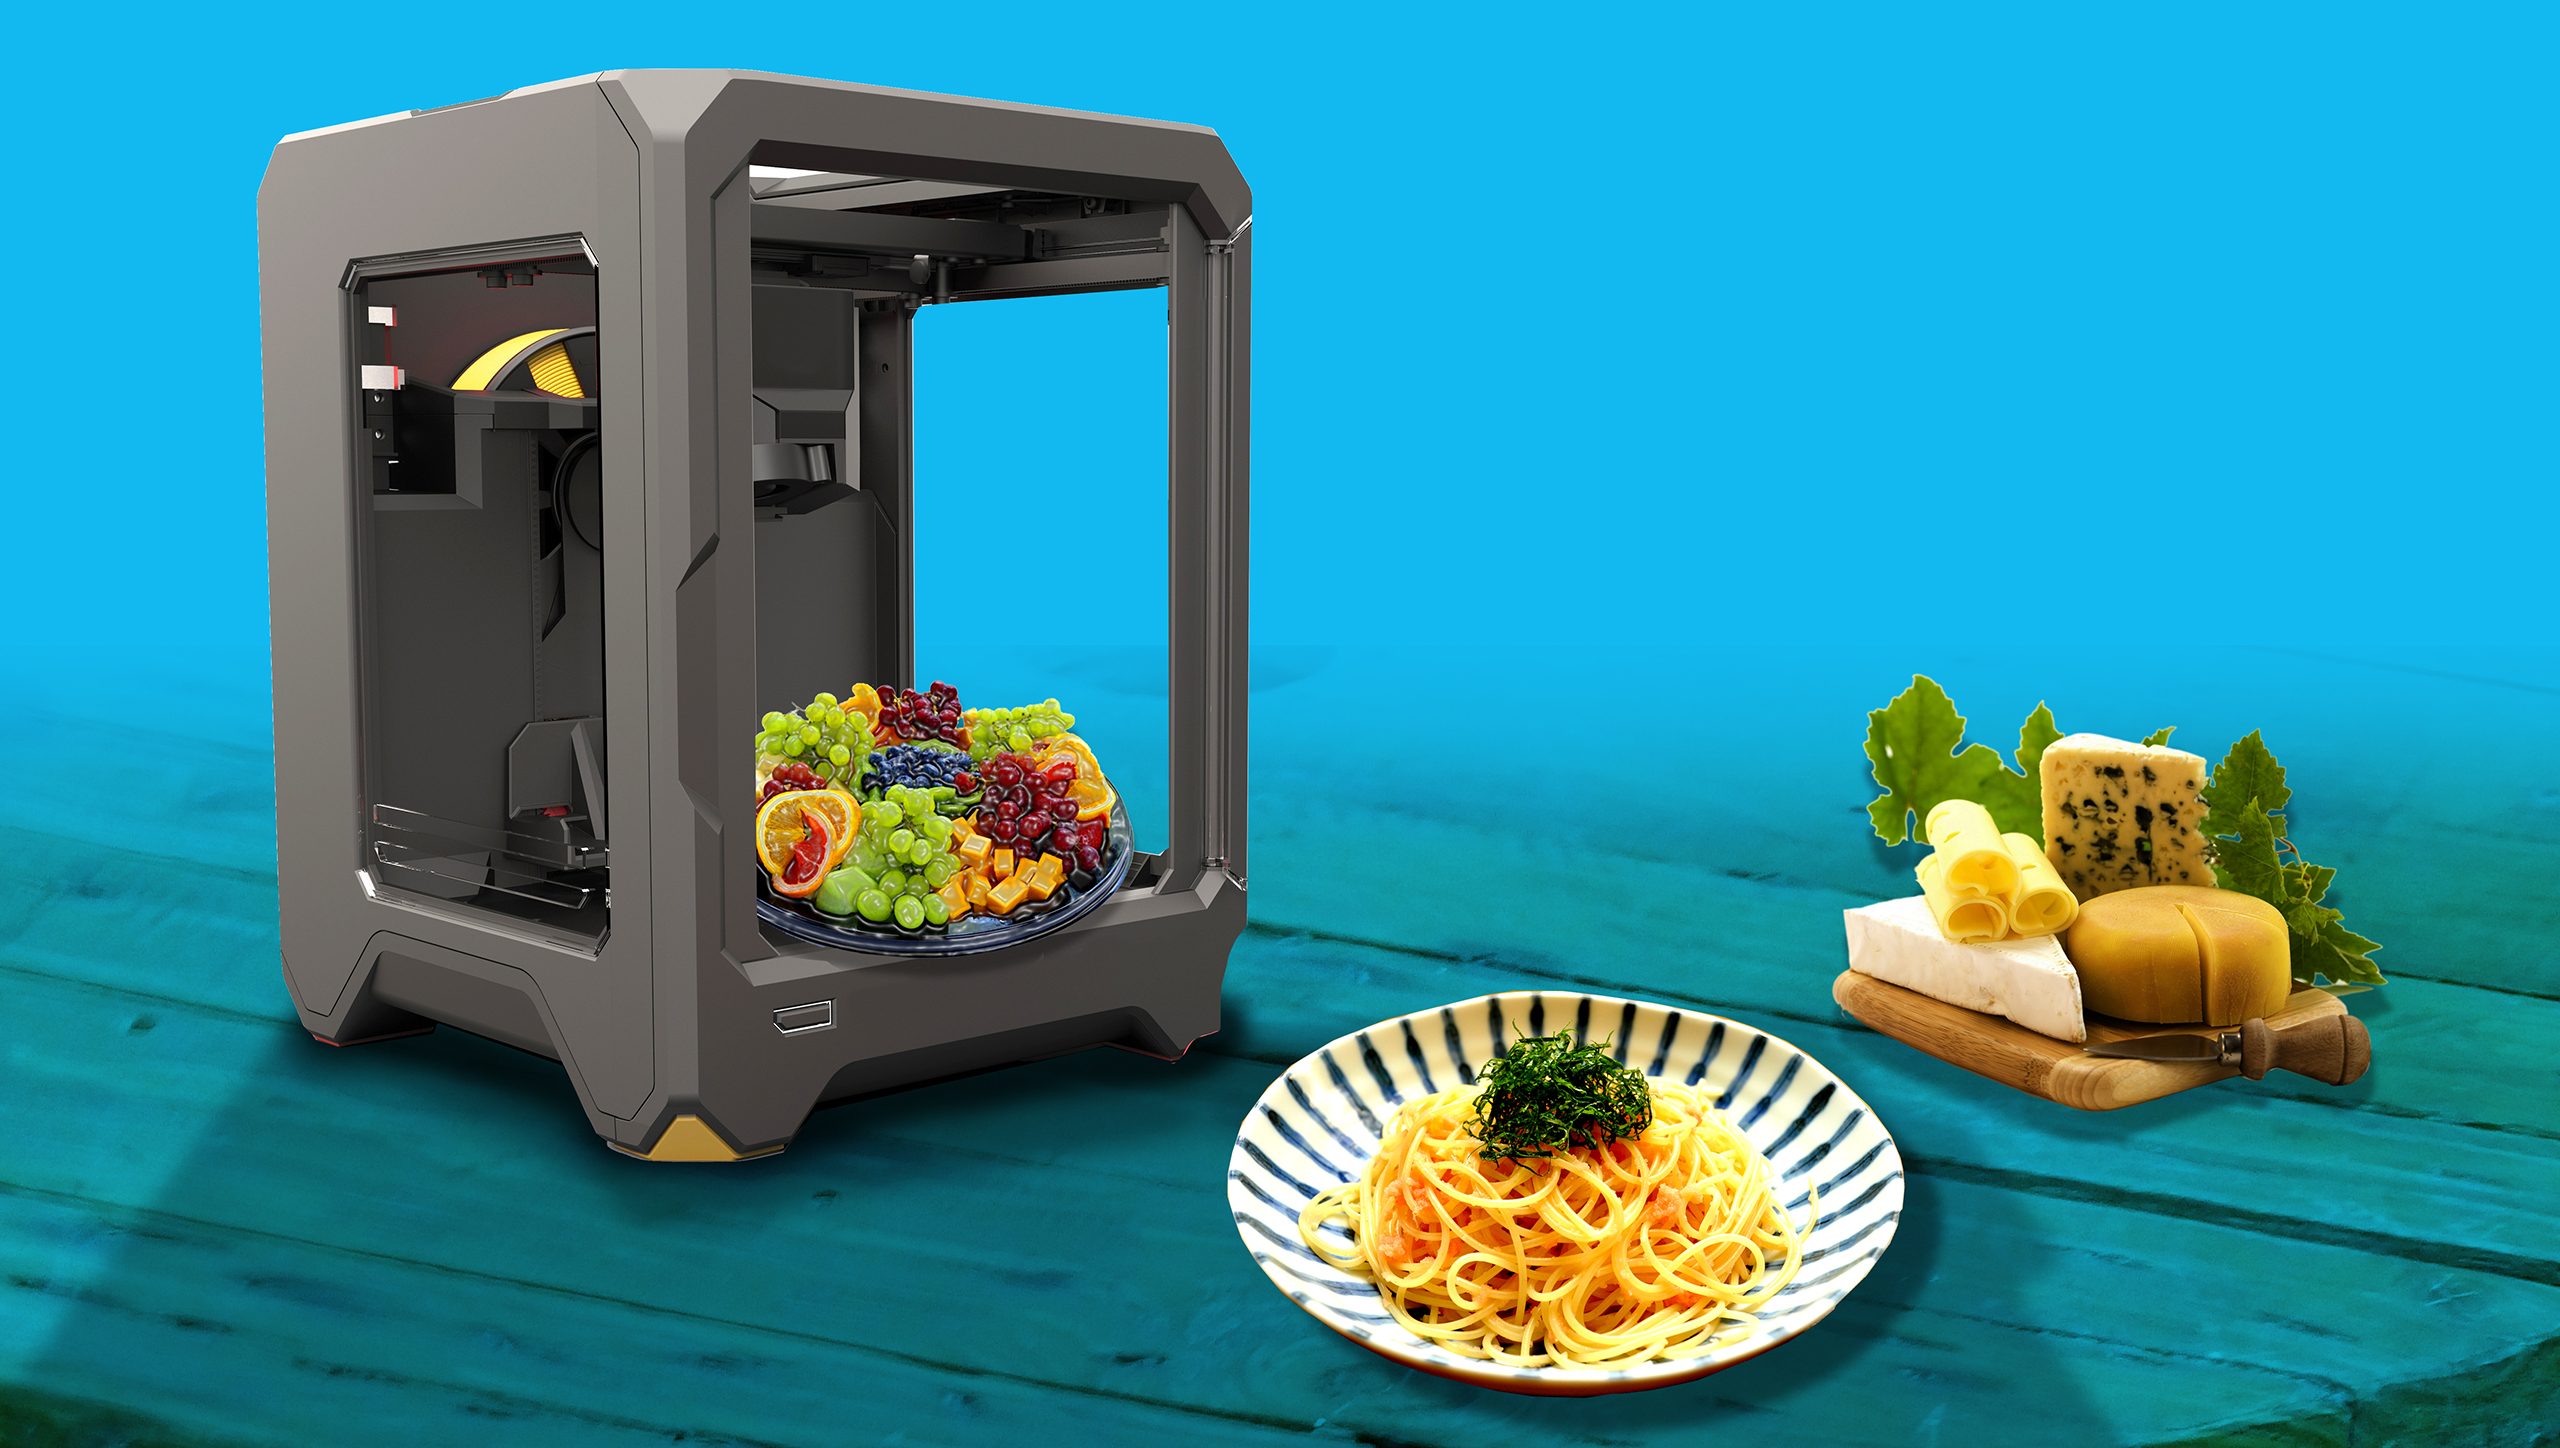 3D printing food e il futuro della gastronomia - Medaarch